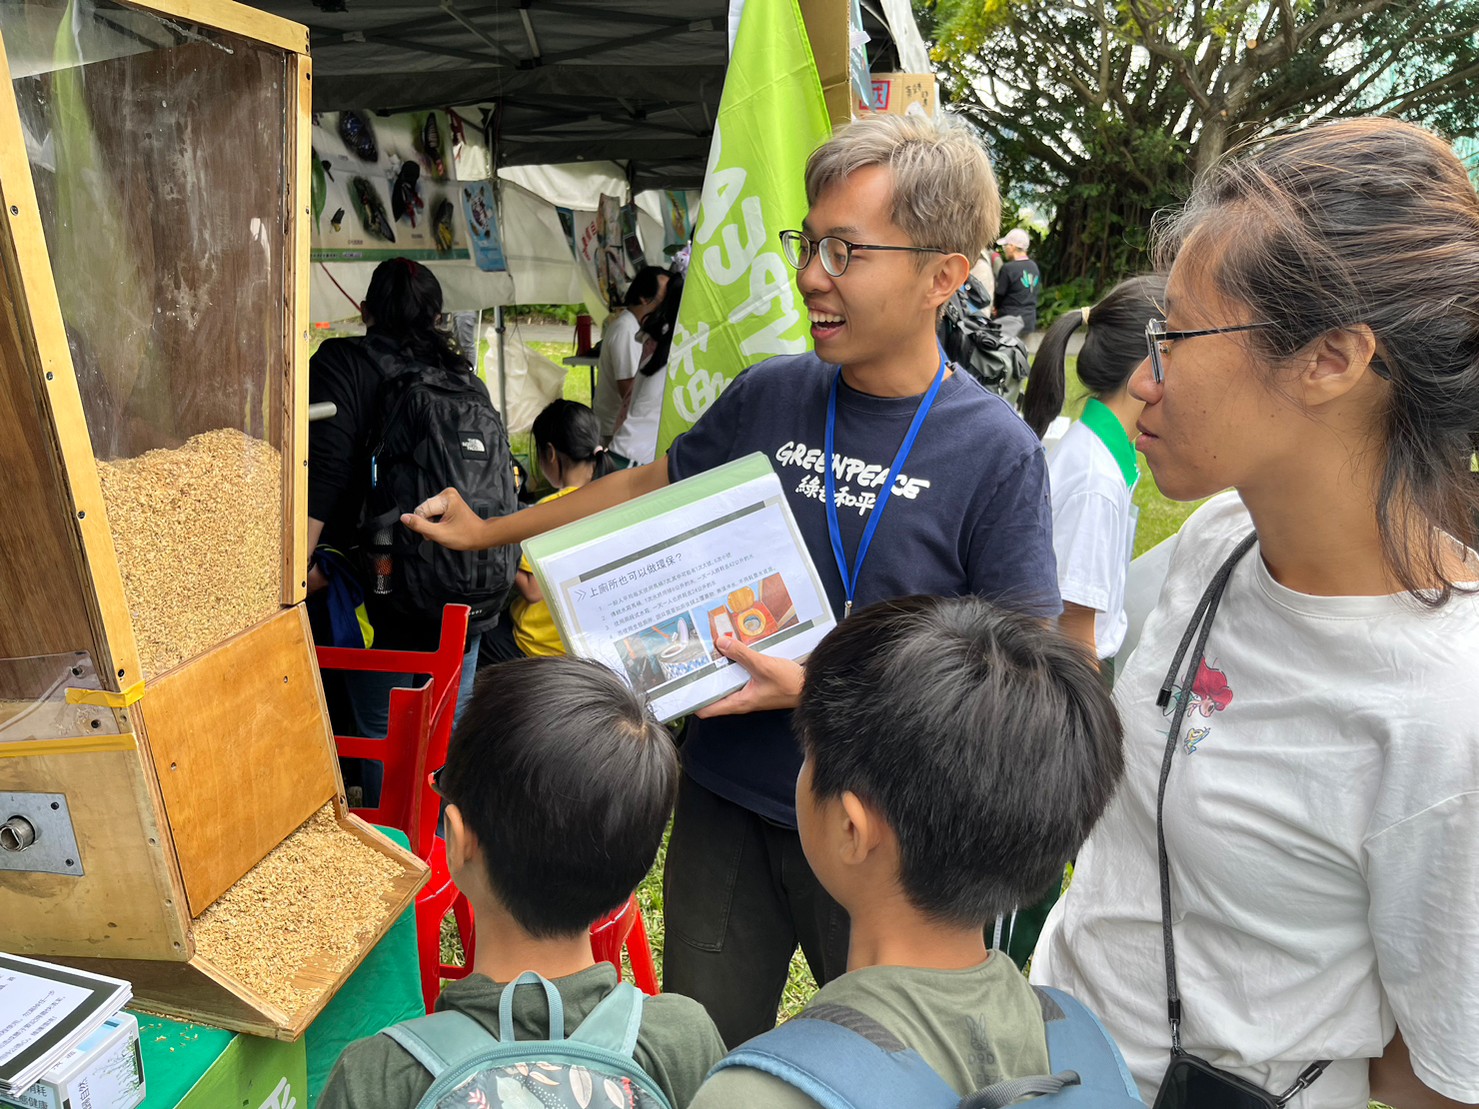 2023年10月21日至22日，綠綠色和平參與了臺北國際賞鳥博覽會，以特別的生態廁所覆蓋式裝置吸引民眾的注意力，成功推廣生態廁所，也獲得積極正向的回饋。